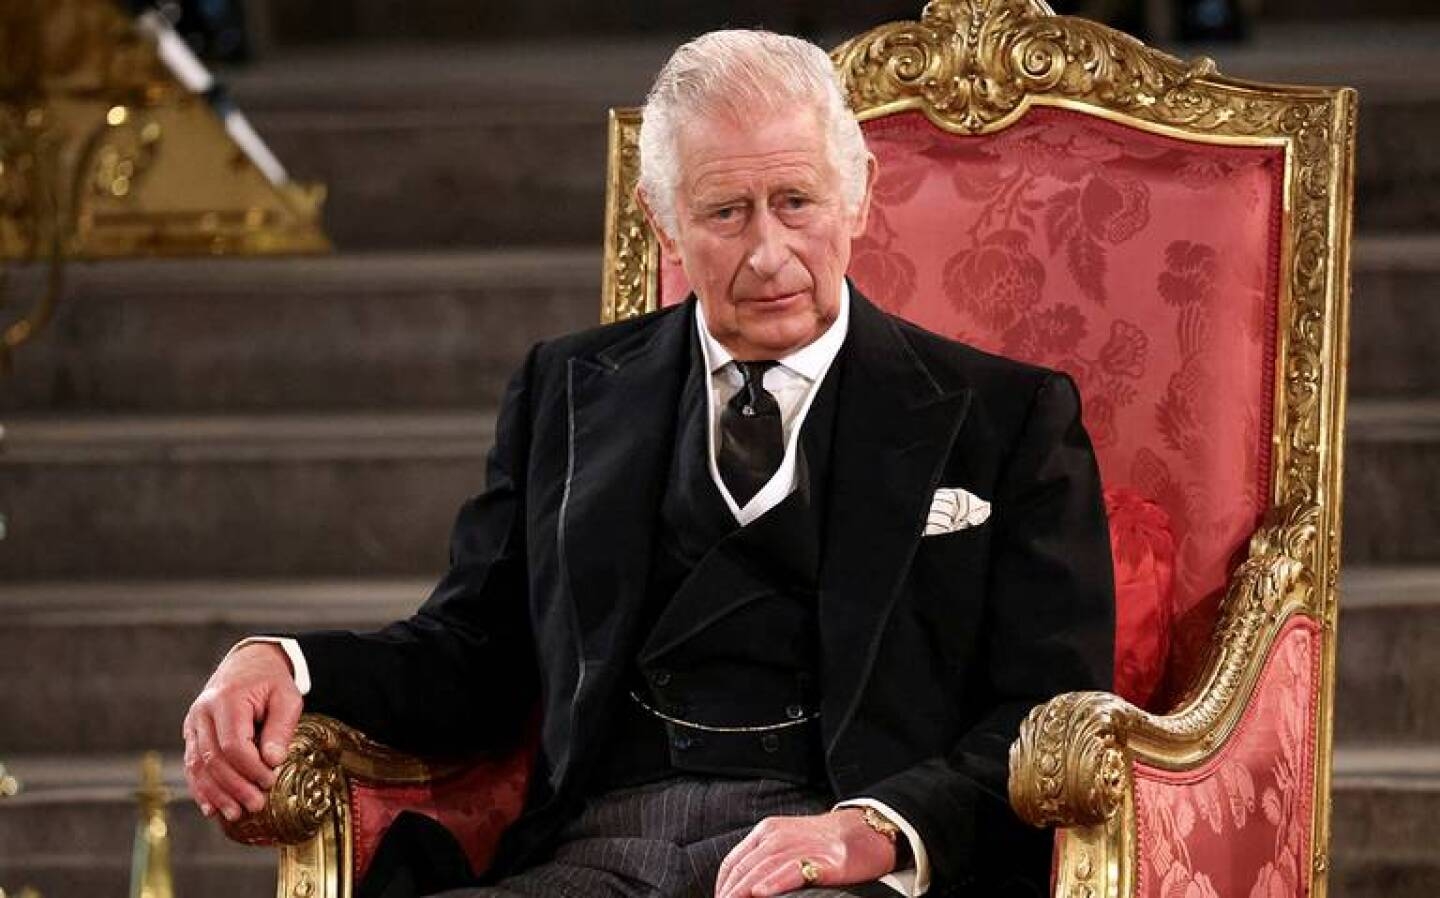 Rey Carlos III asegura que continuará en su labor pública pese a diagnóstico de cáncer